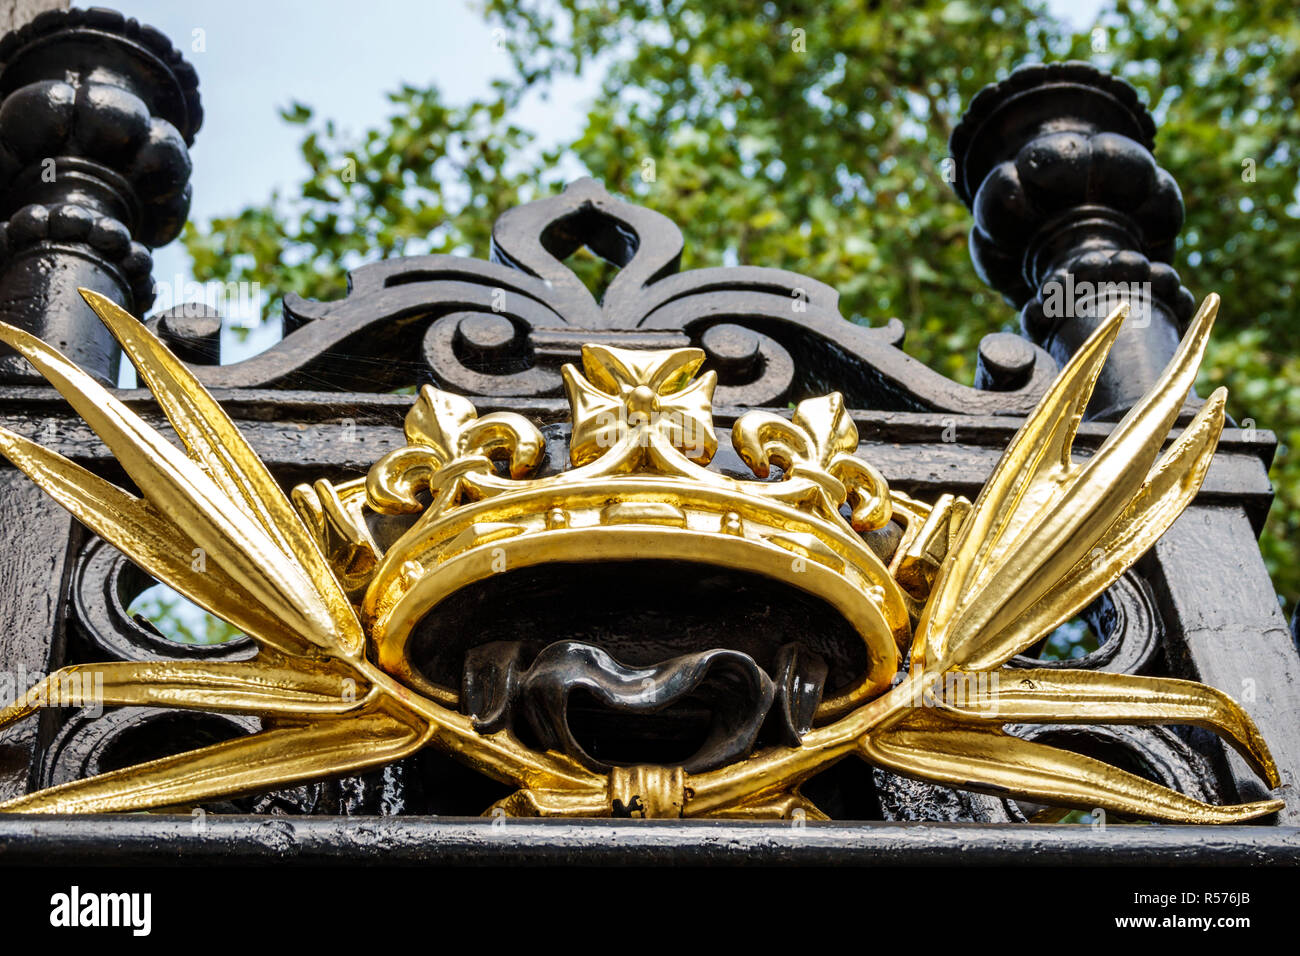 Londra Inghilterra,Regno Unito,Westminster,Buckingham Palace Gate,residenza reale,monarchia,dettaglio ornamentale,corona,dorata,Regno Unito GB Inglese Europa,UK180828086 Foto Stock